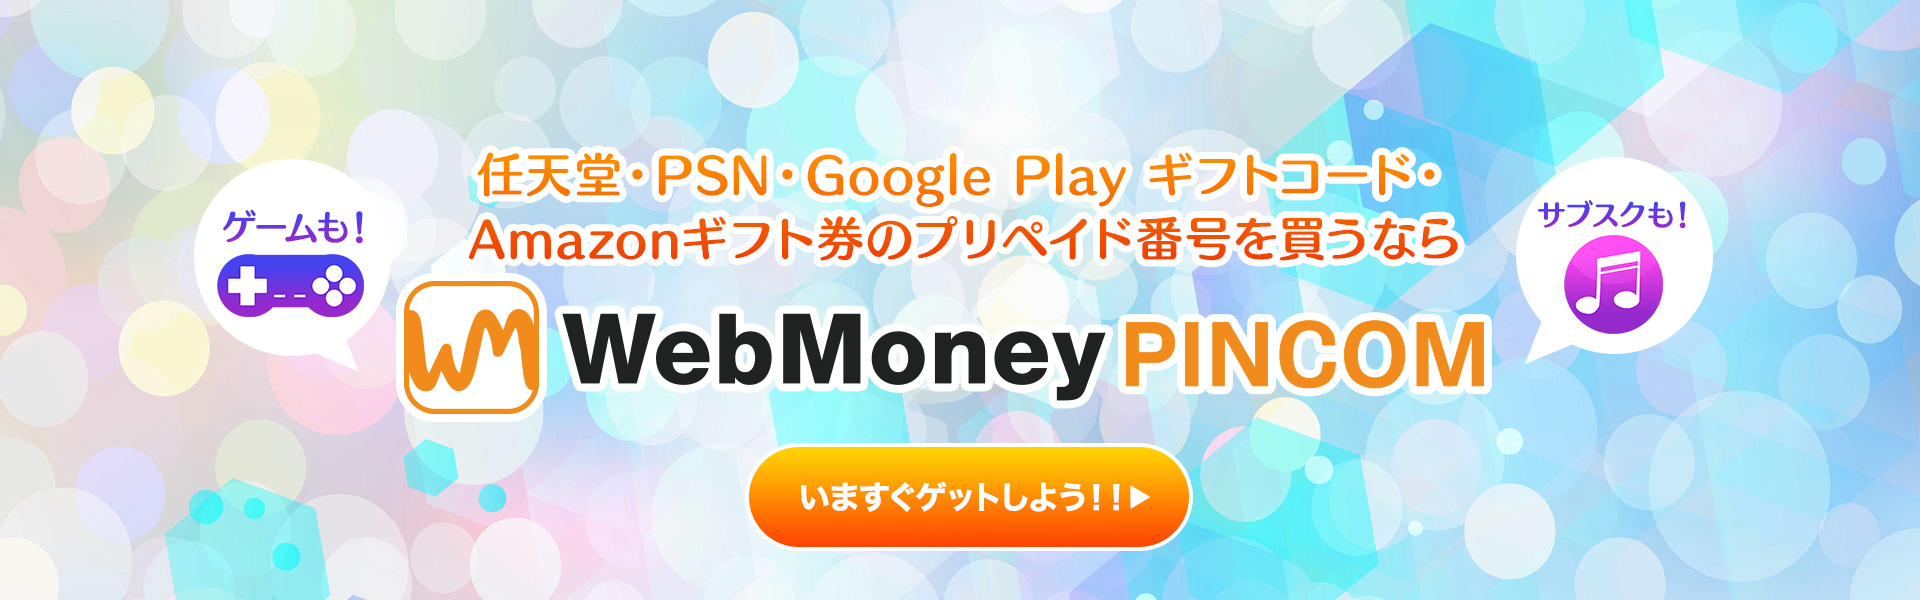 ニンテンドープリペイド番号、Google Play ギフトコード、プレイステーションストアチケット、Amazonギフト券のプリペイド番号を買うなら『WebMoney PINCOM』